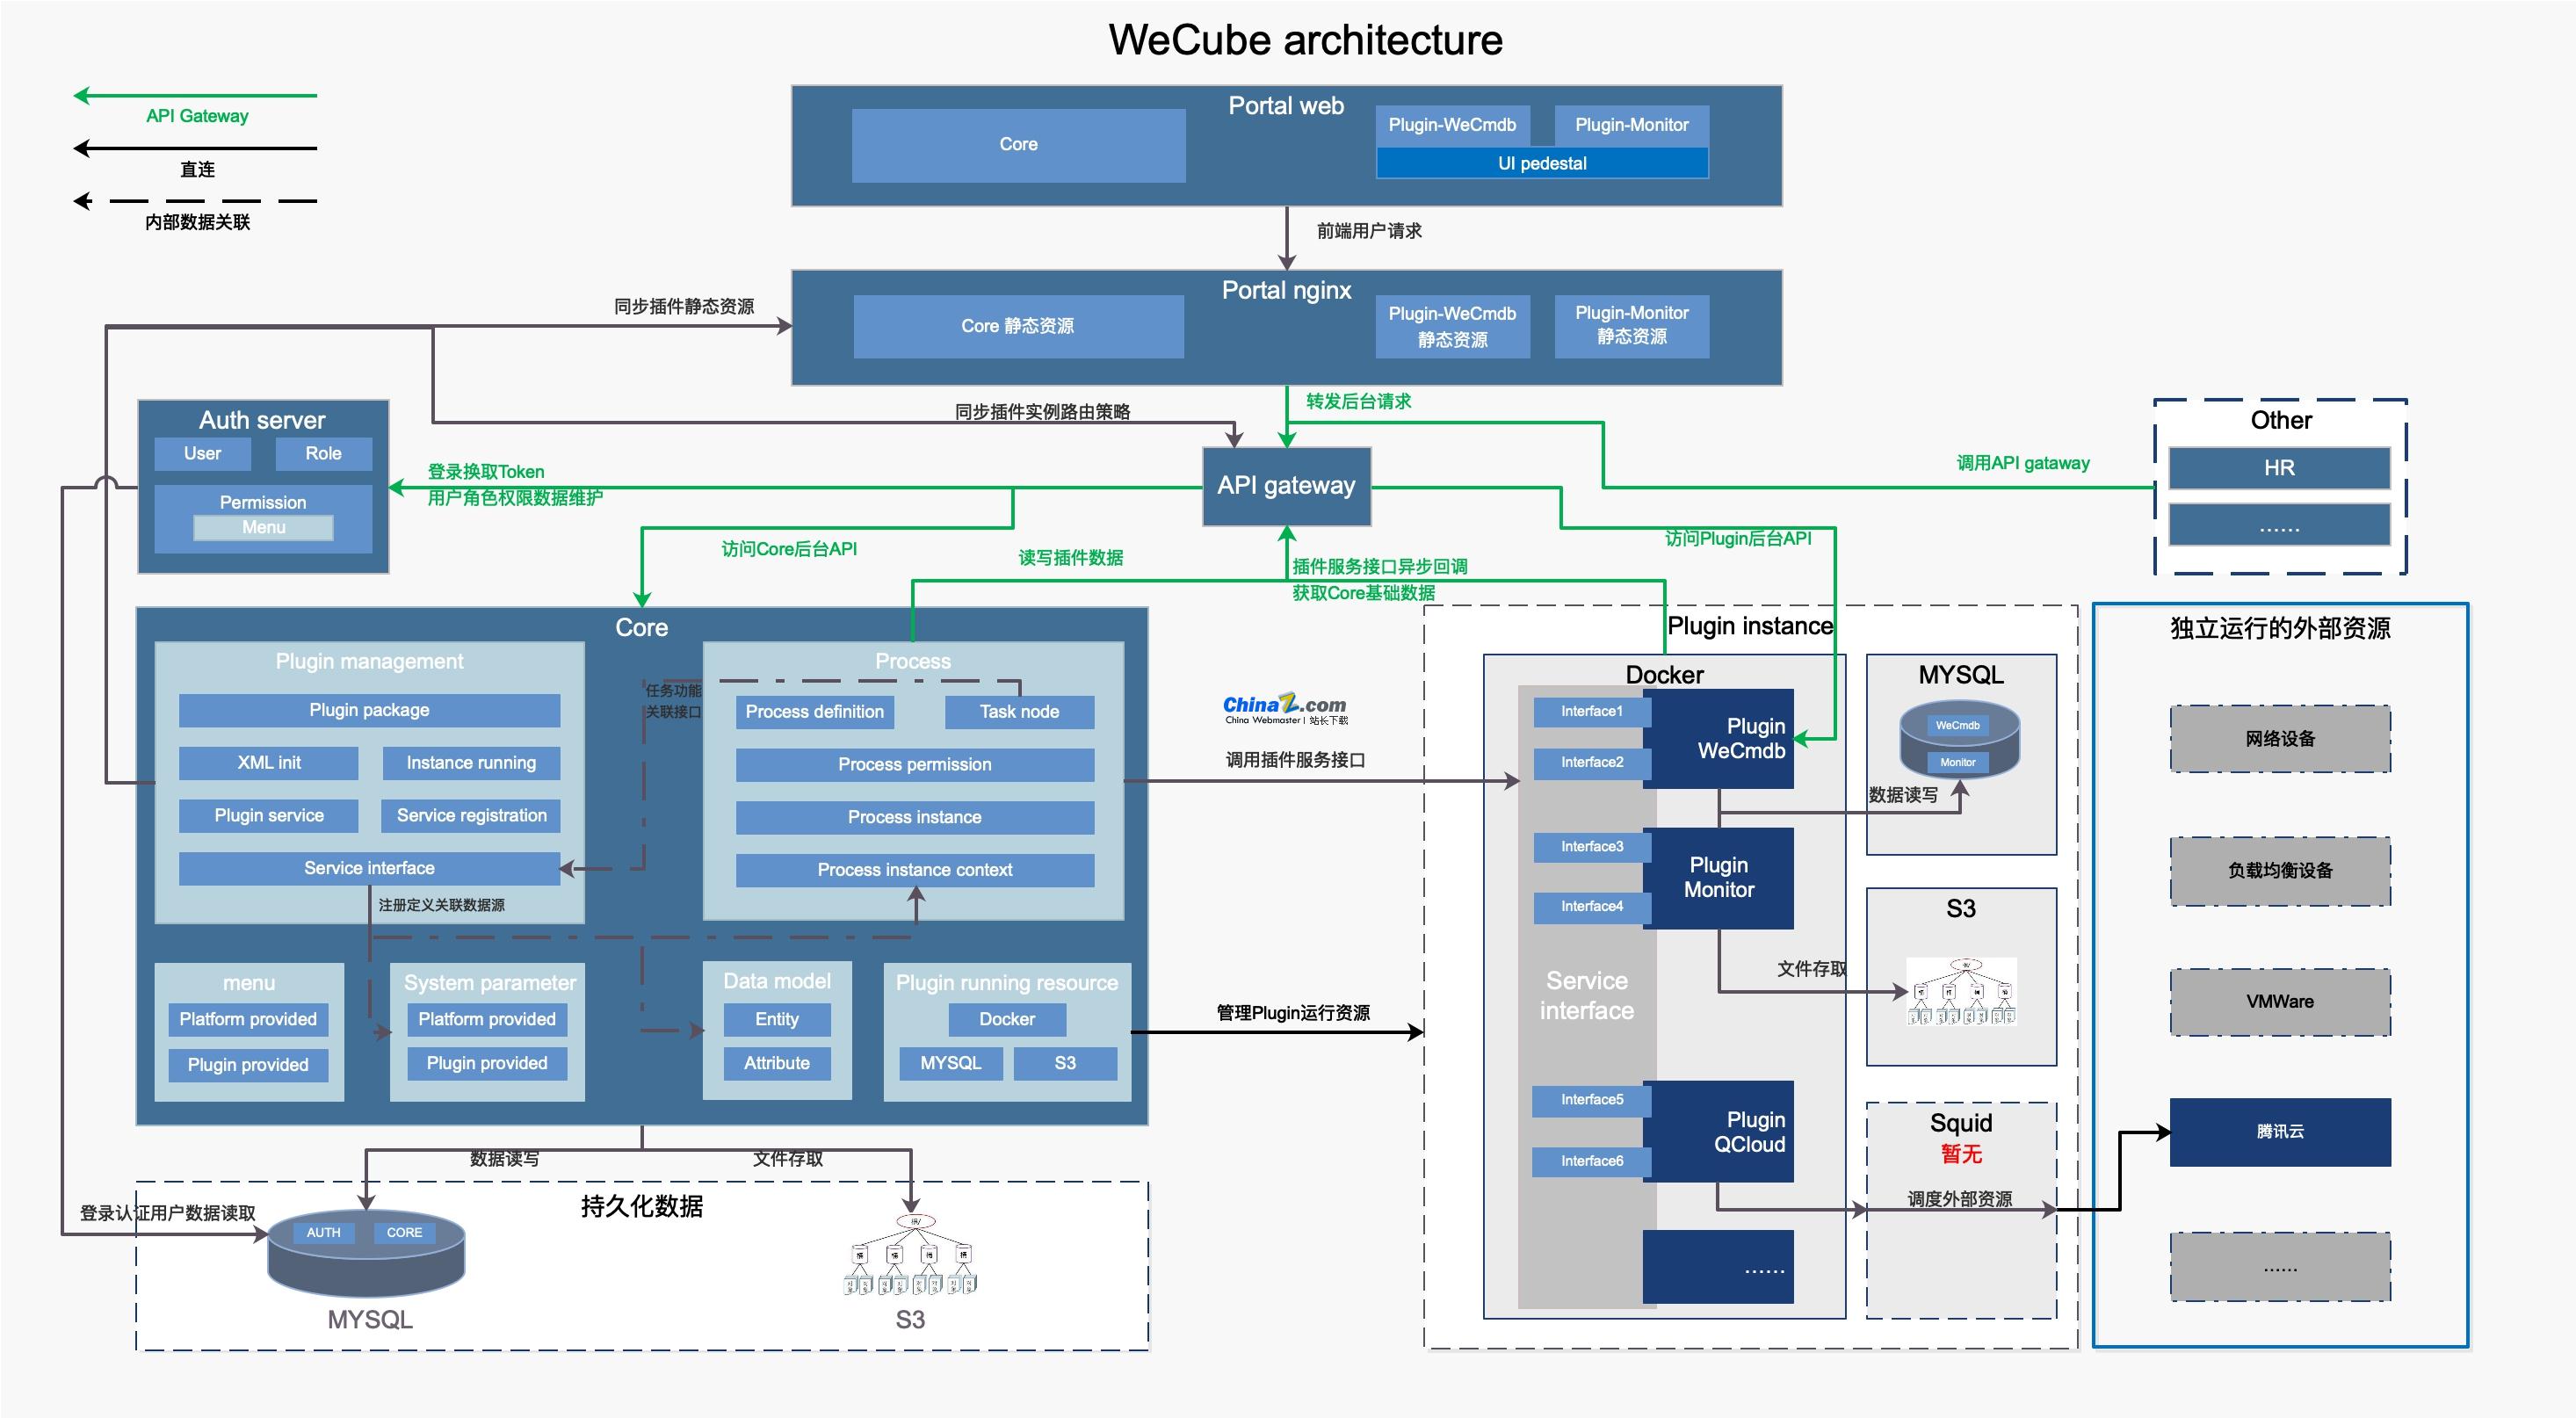 wecube一站式IT架构管理和运维管理工具  最新版